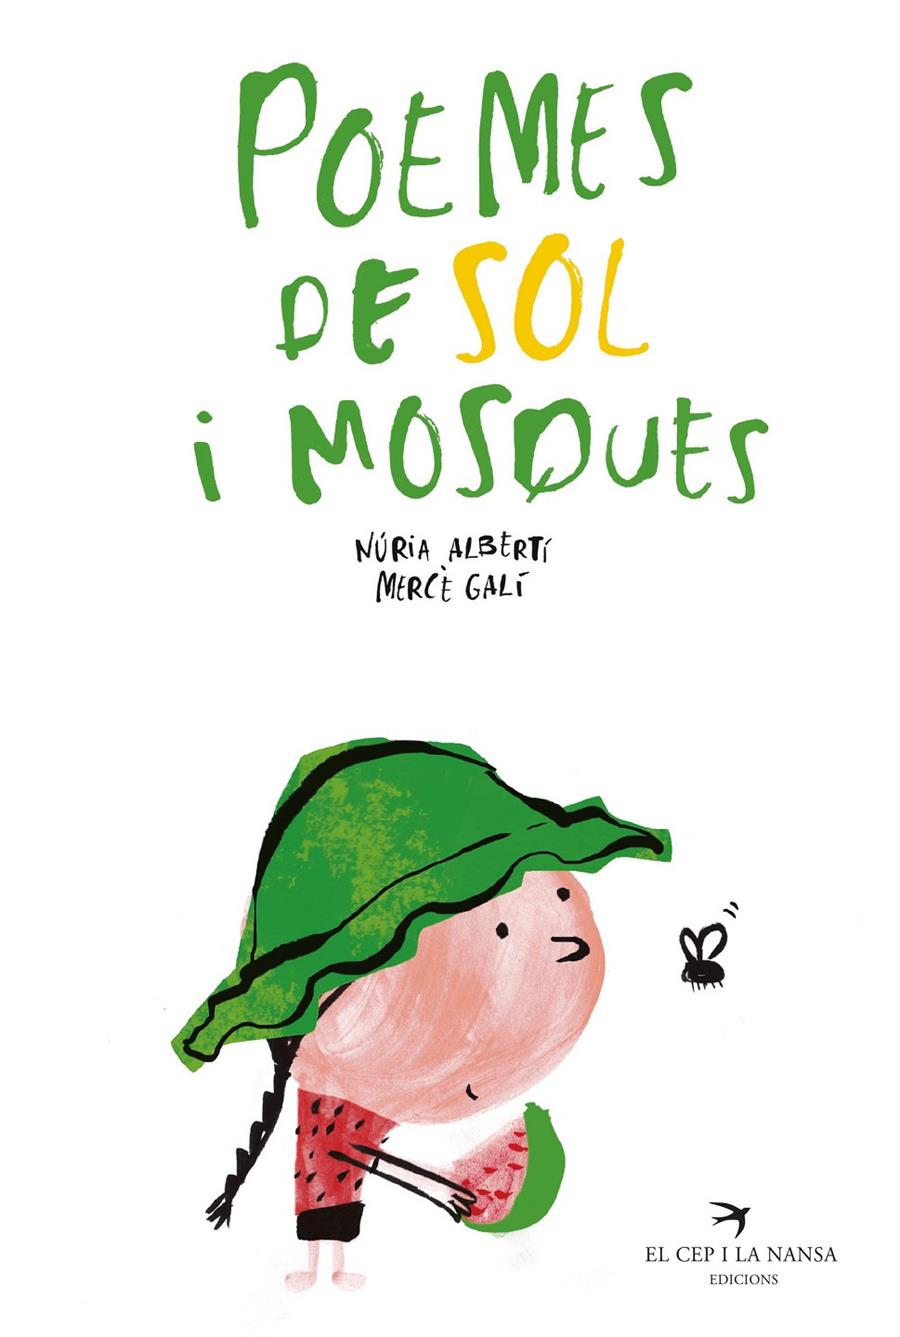 Poemes de sol i mosques | Albertí Martínez de Velasco, Núria | Cooperativa autogestionària